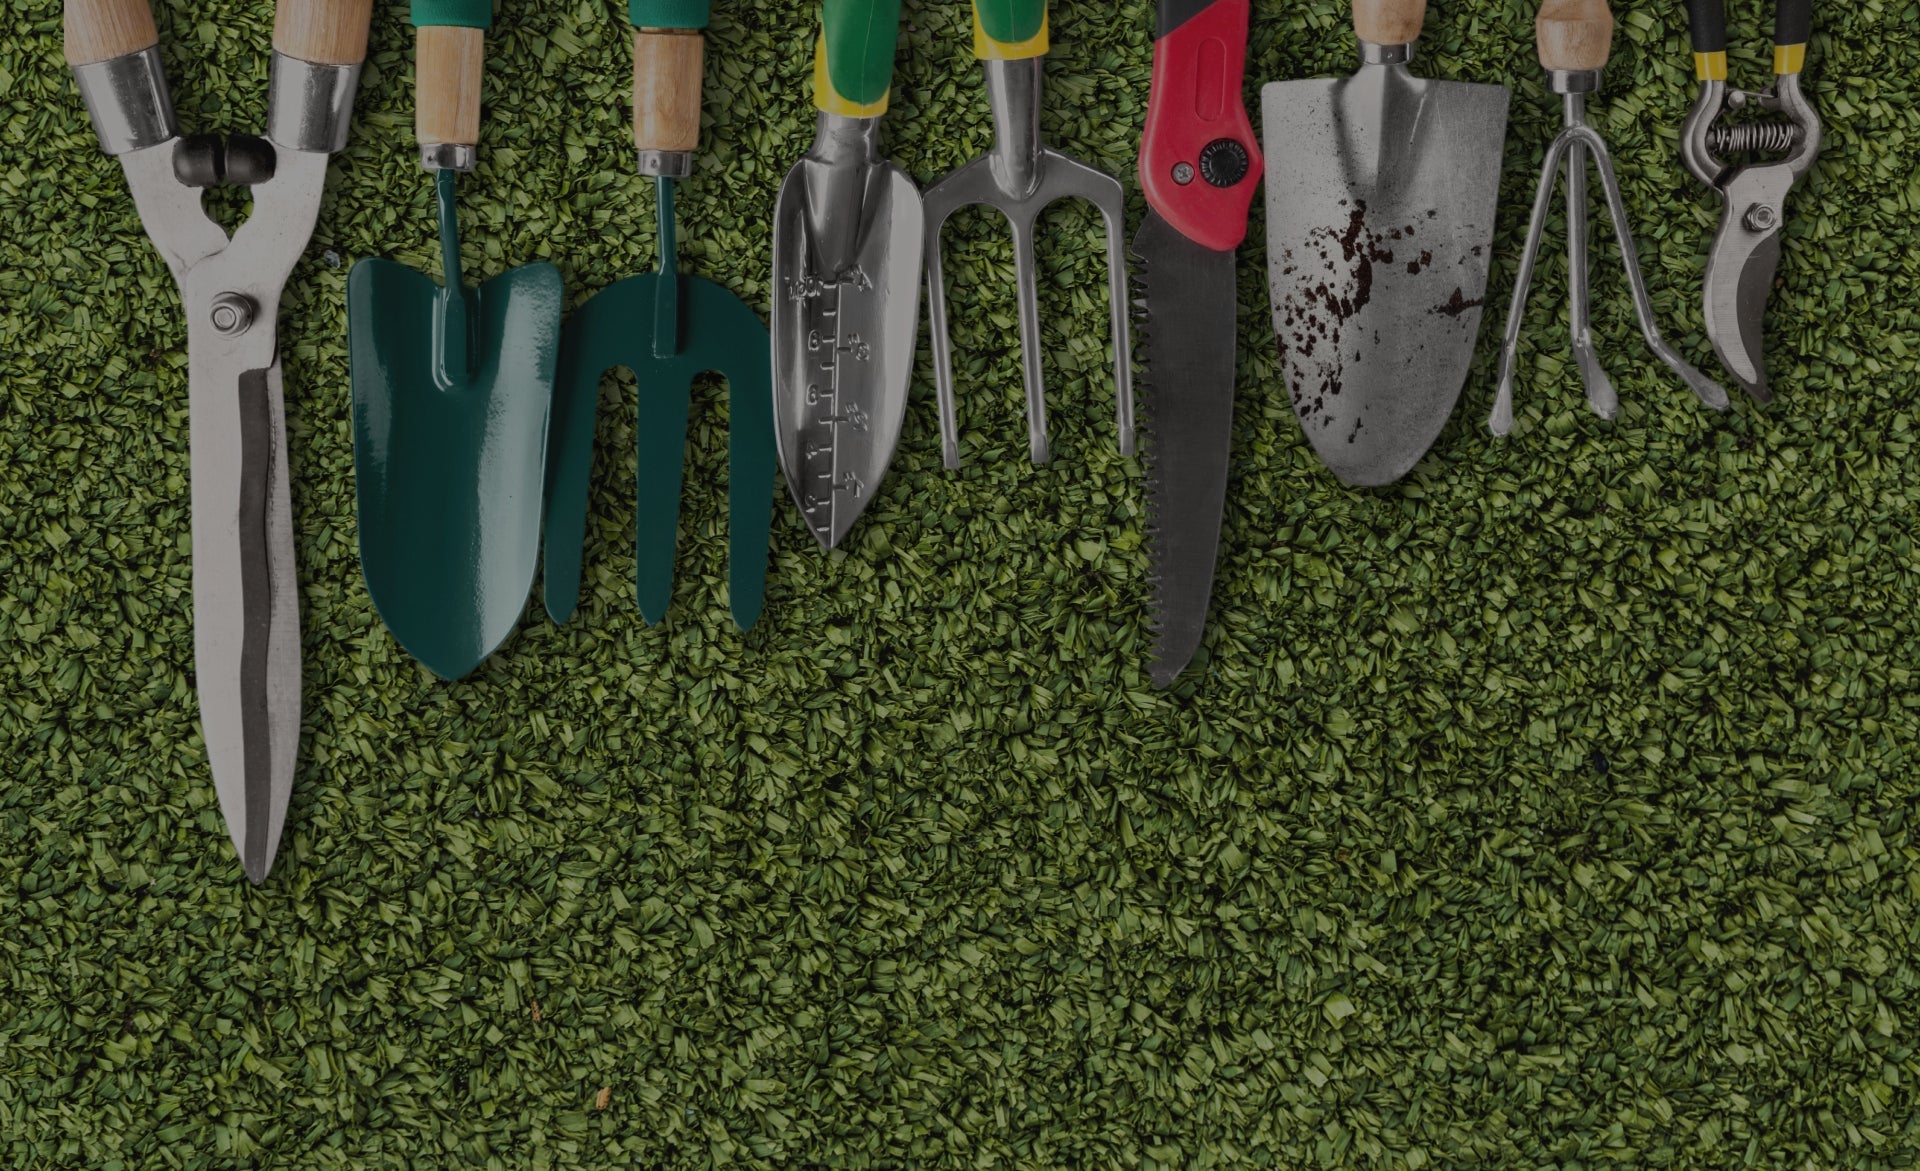 6 herramientas básicas para cuidar tu jardín - Tool Ferreterías